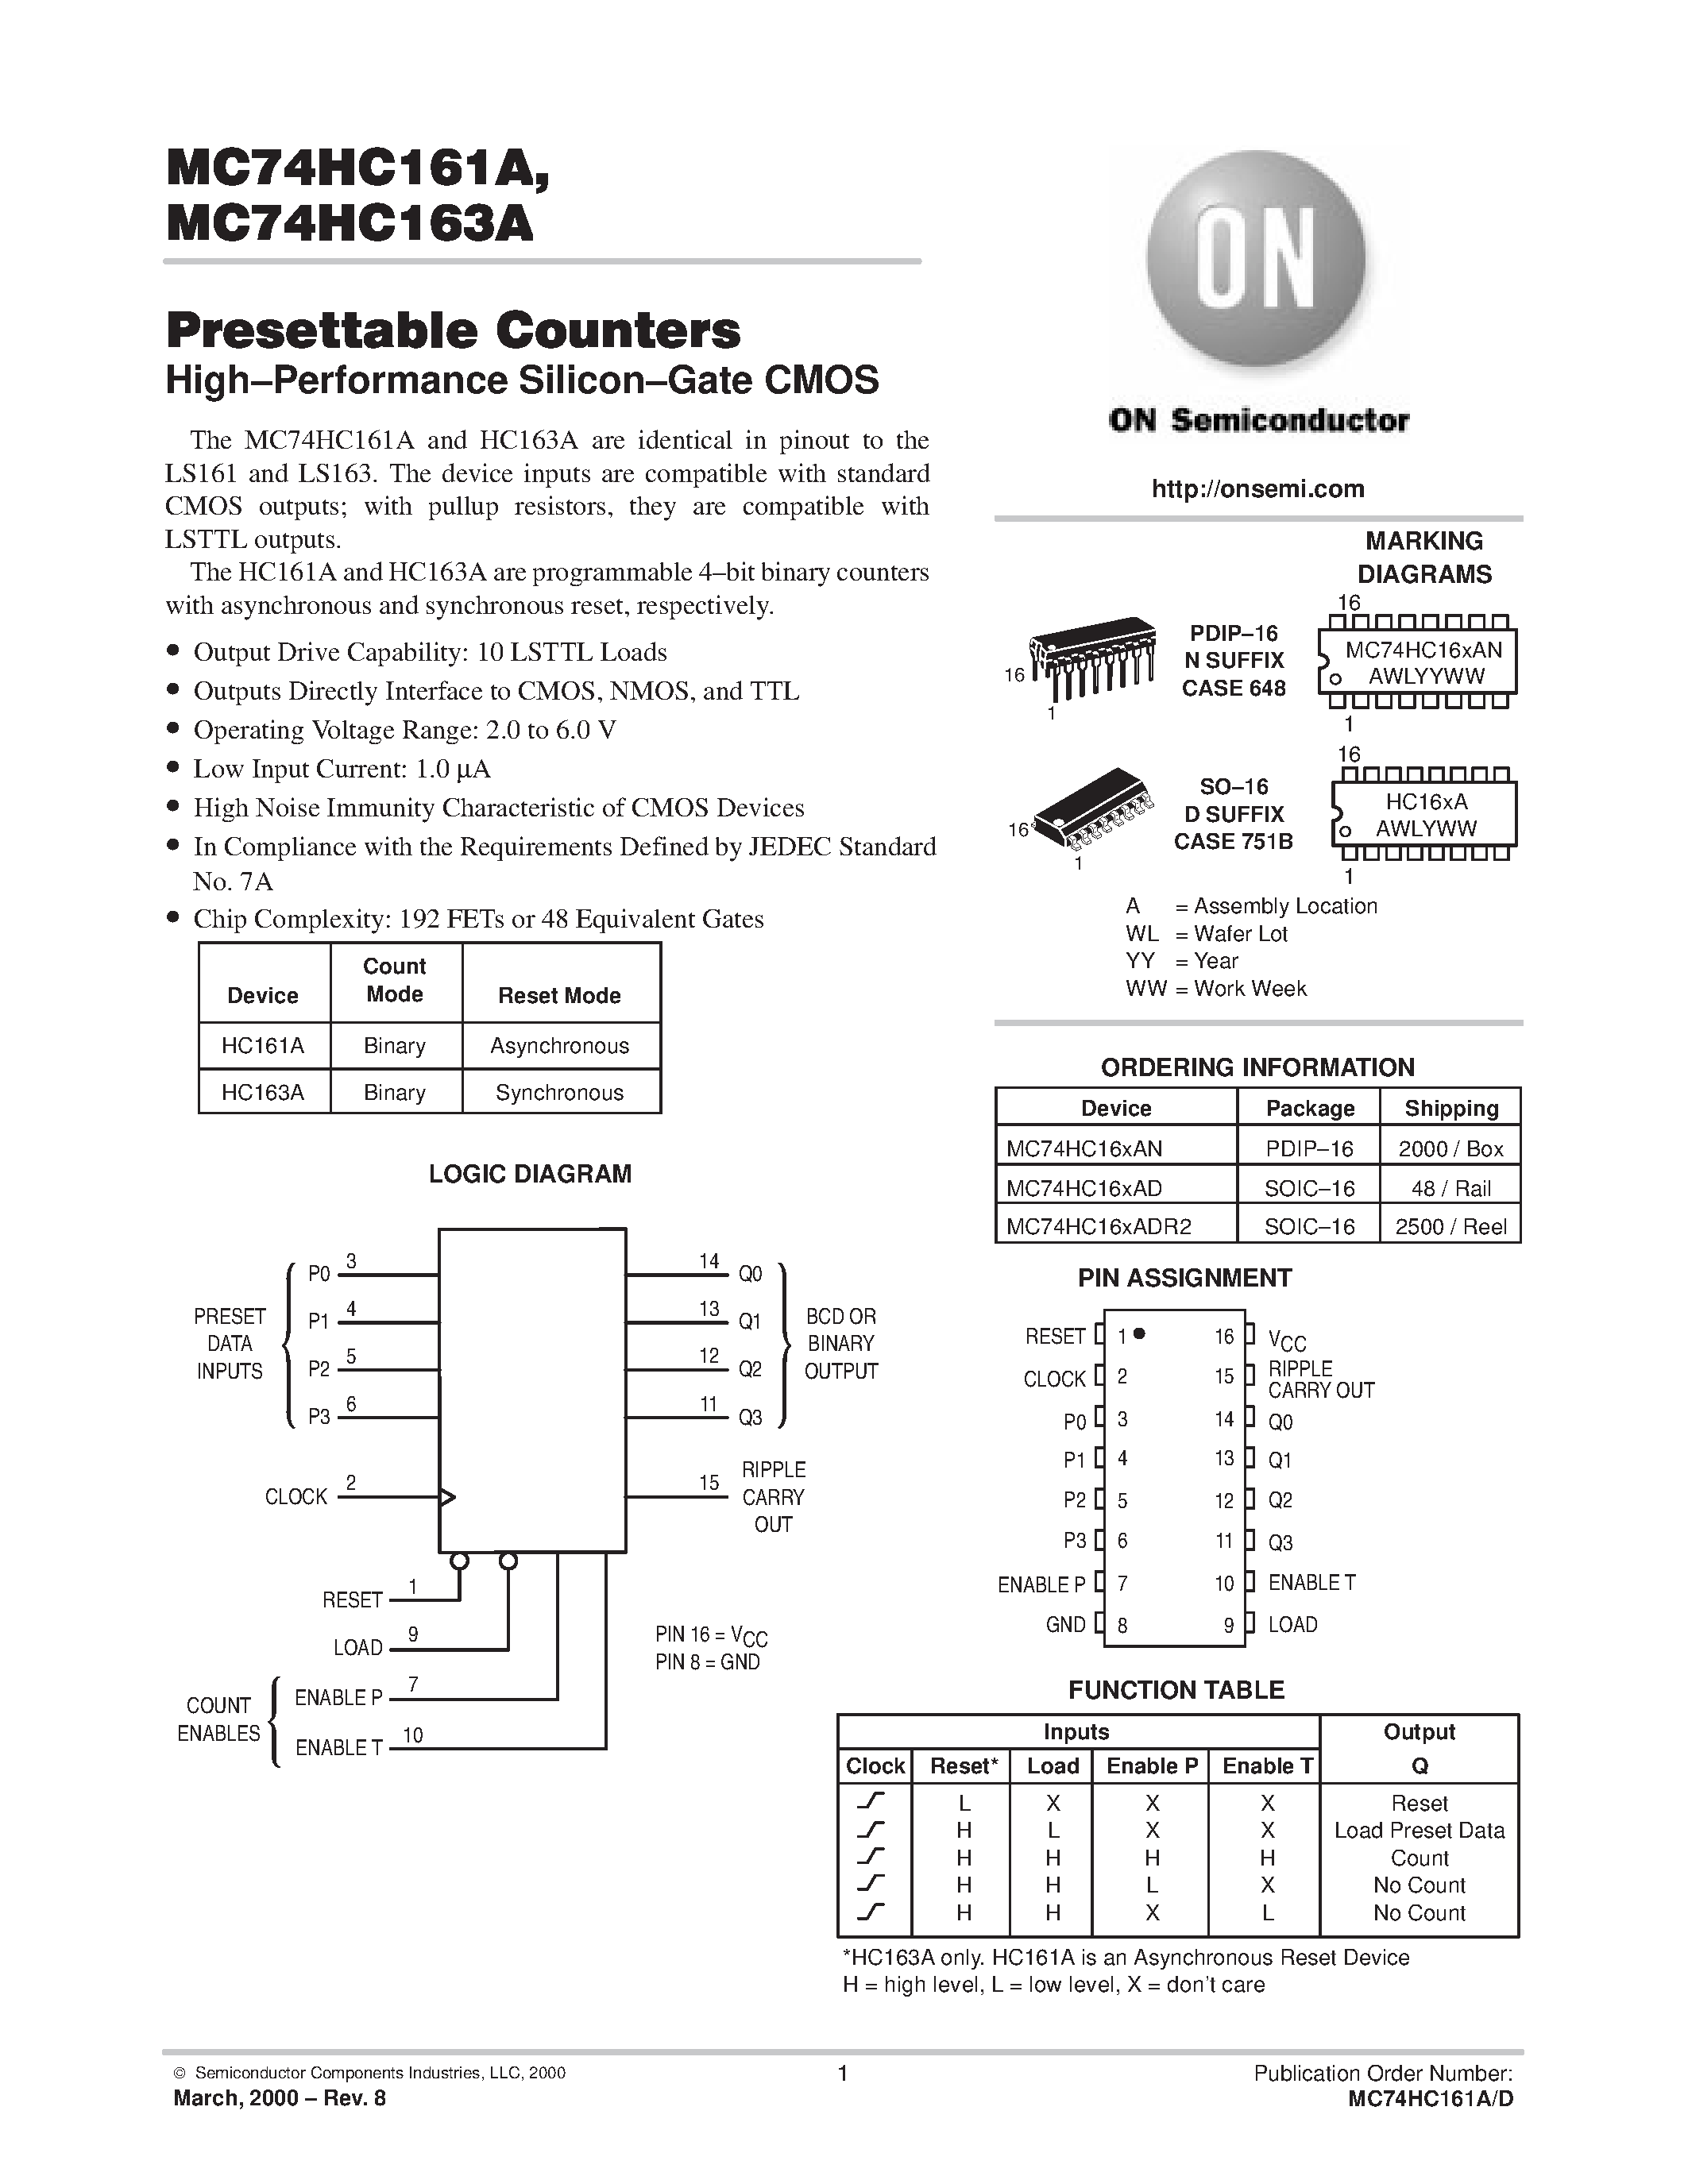 Даташит MC74HC161A - (MC74HC161A / MC74HC163A) Presettable Counters страница 1